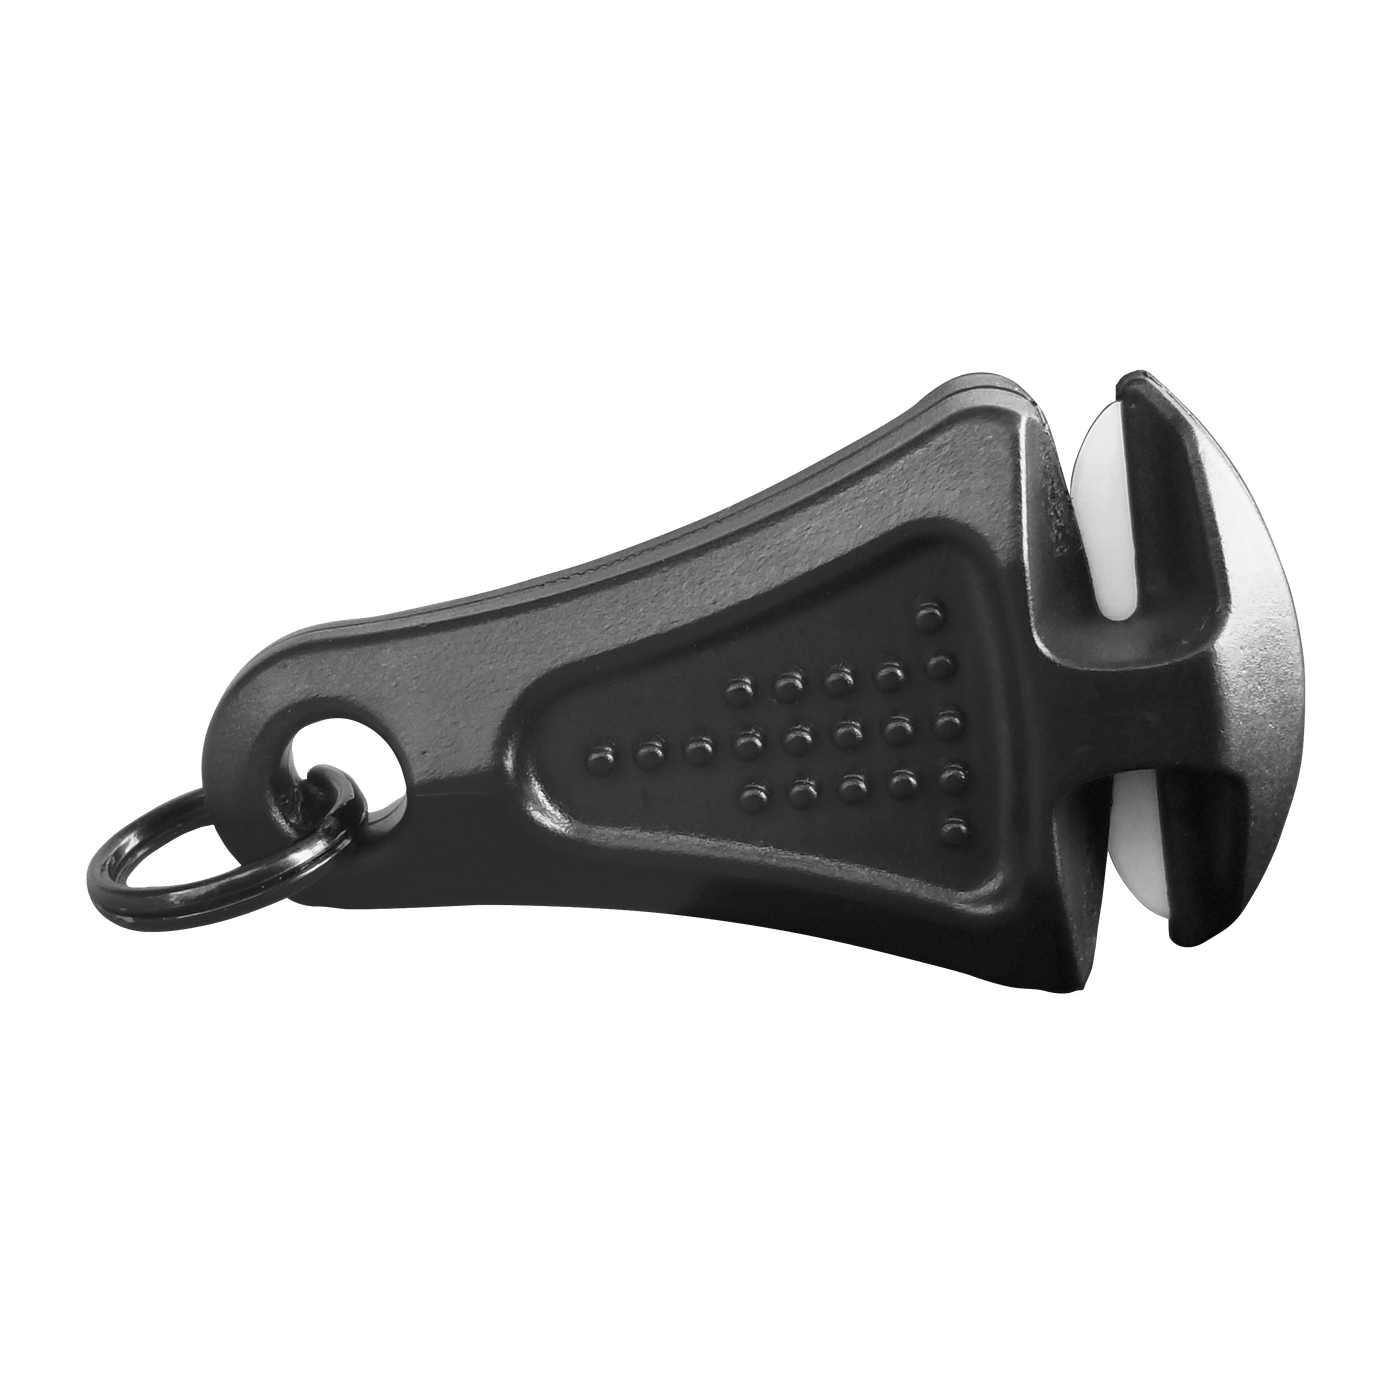 Line Cutterz Ceramic Blade Zipper Pull Cutter